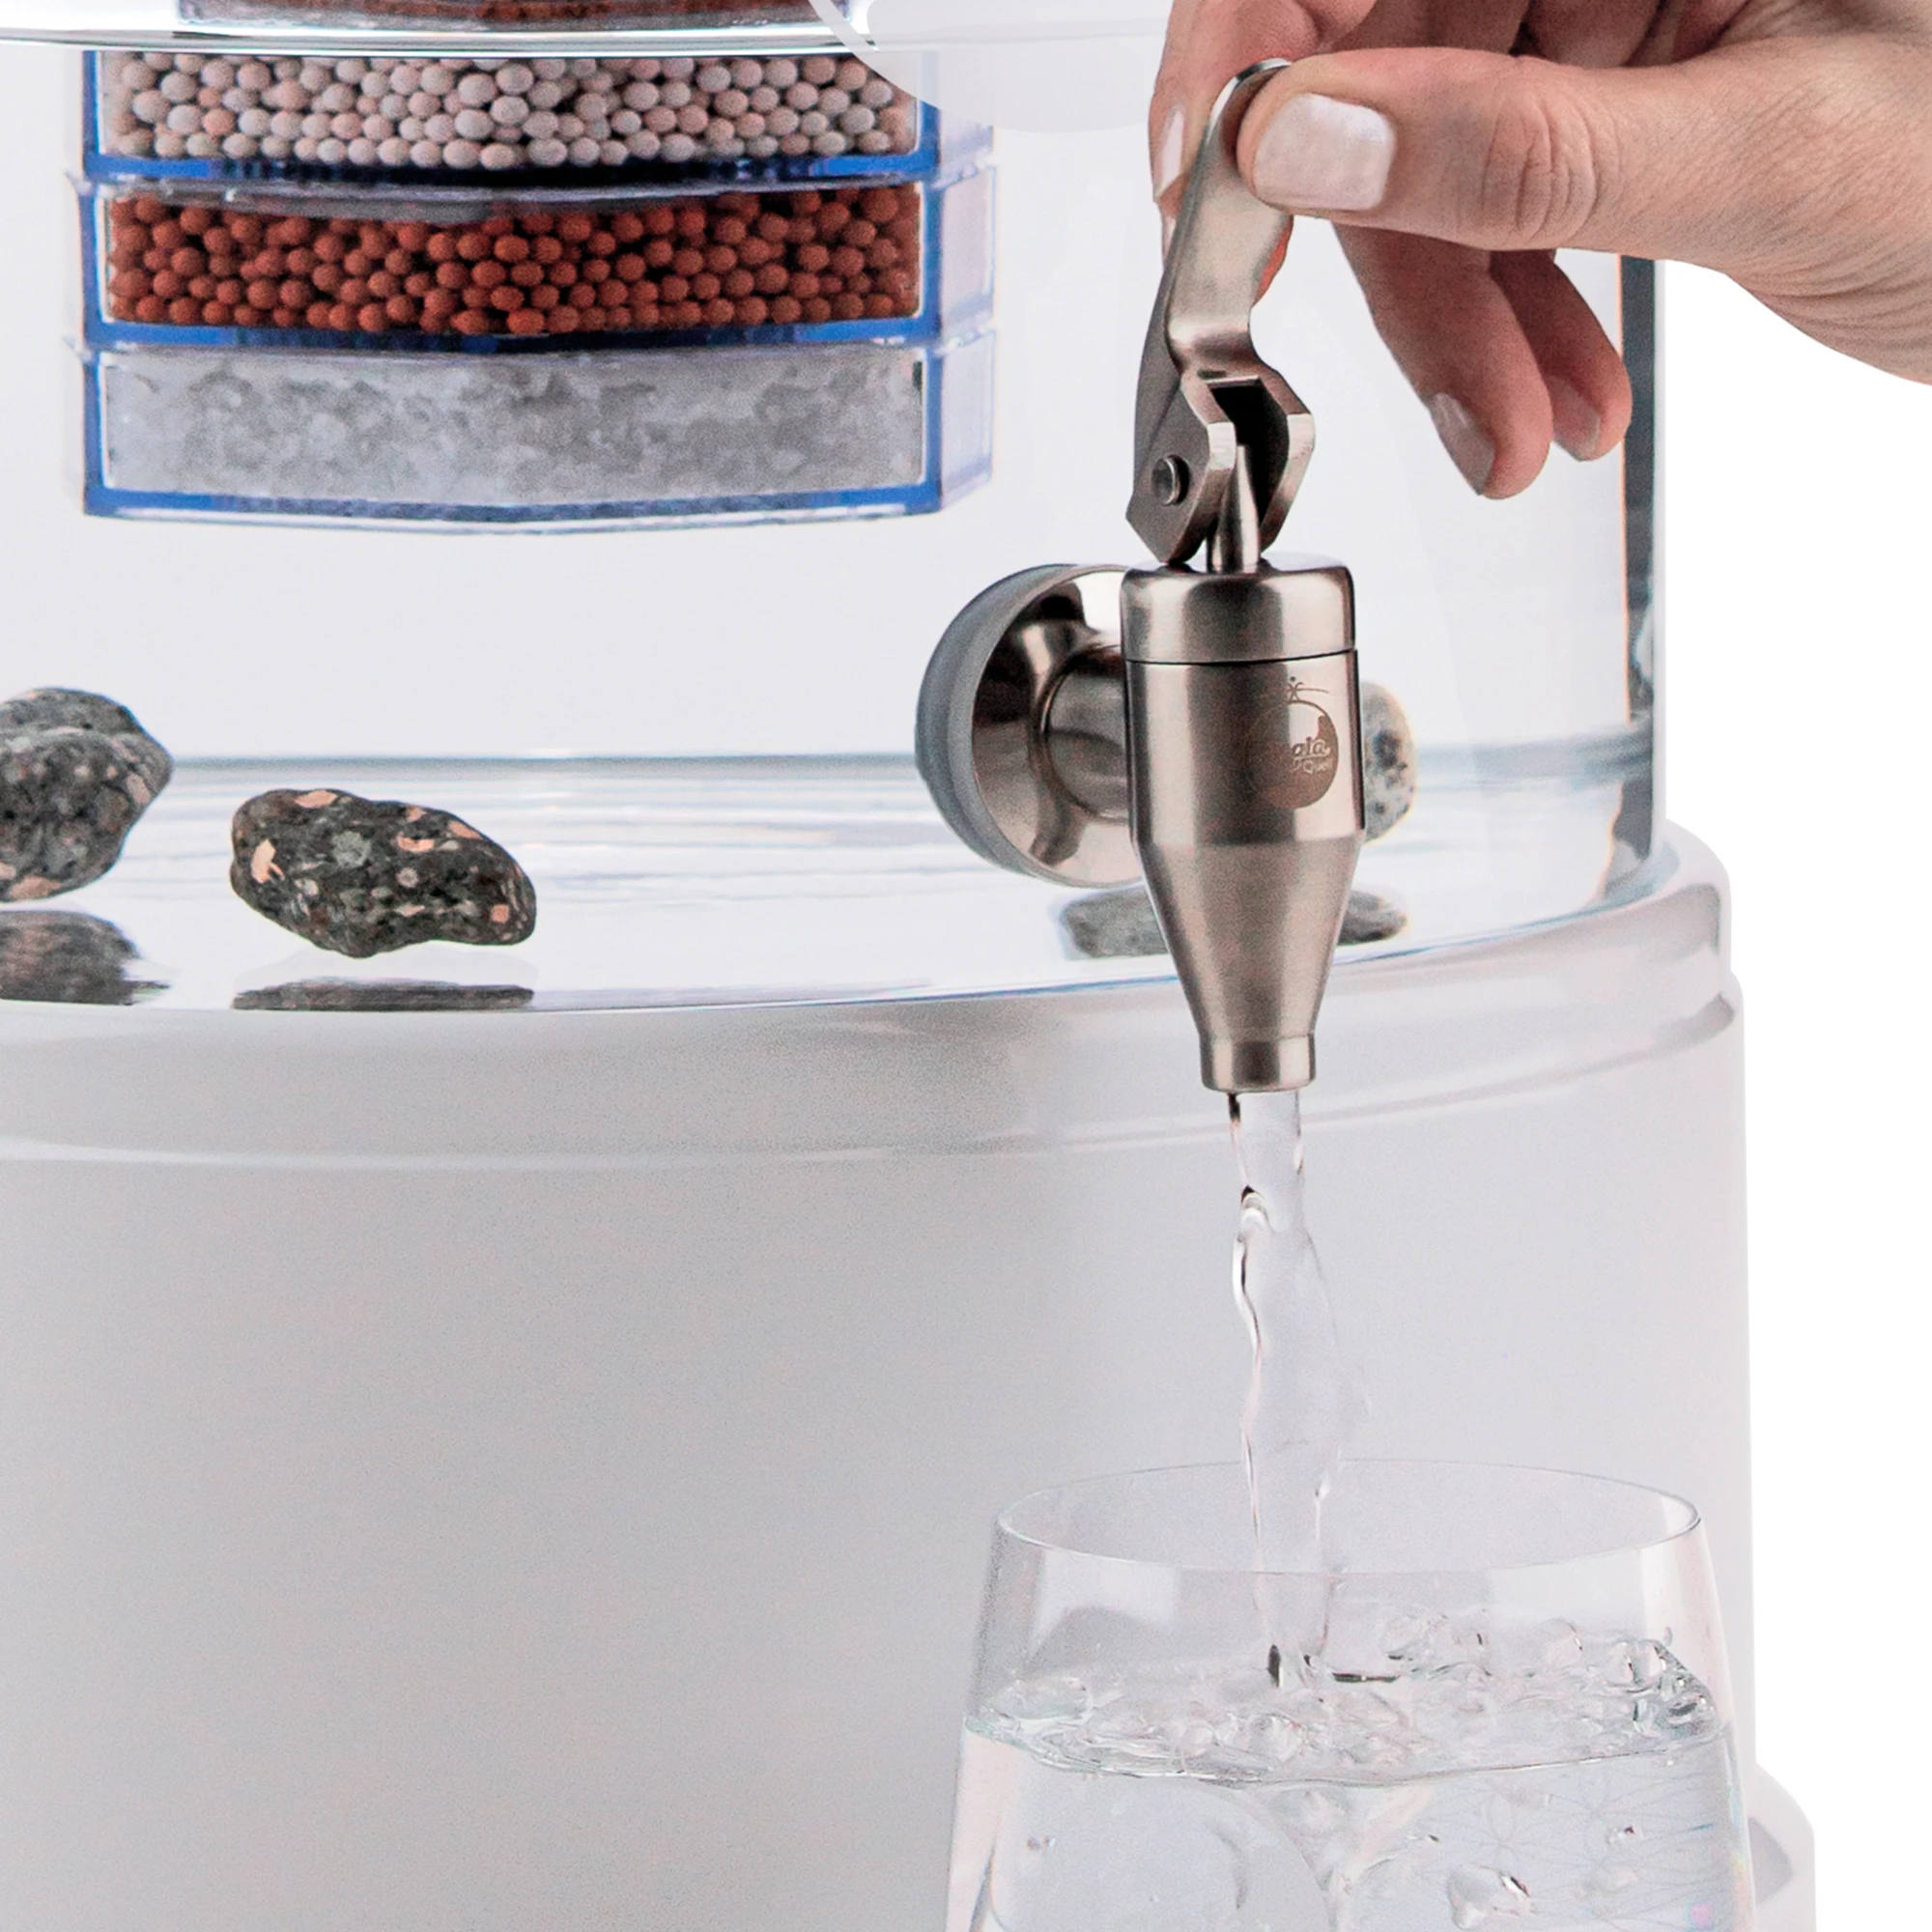 Zu sehen ist der Edelstahl Wasserhahn Yamashita für Standfilter an einem Glastank in kristallklar montiert. Der Hahn ist silber, eine Hand drückt den Hebel zum öffnen nach oben, Wasser läuft in ein darunter stehendes Glas.